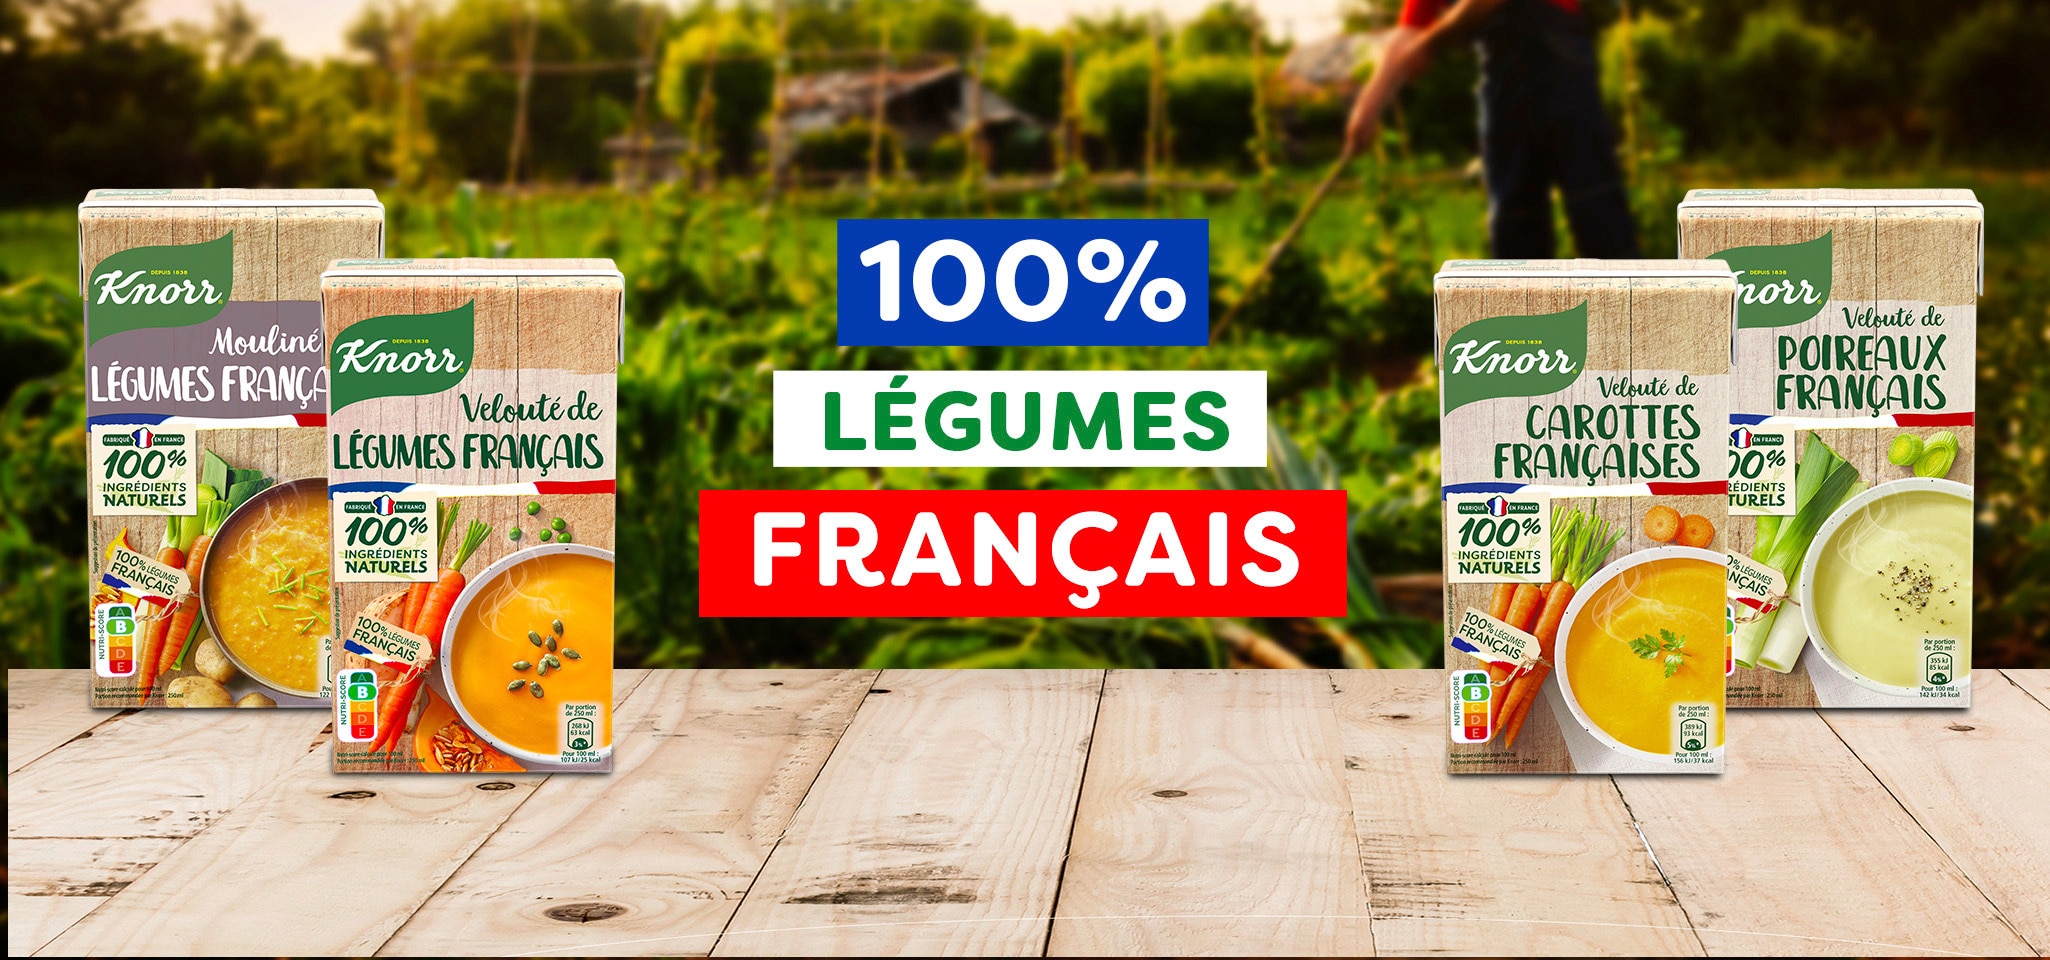 100% Légumes Français